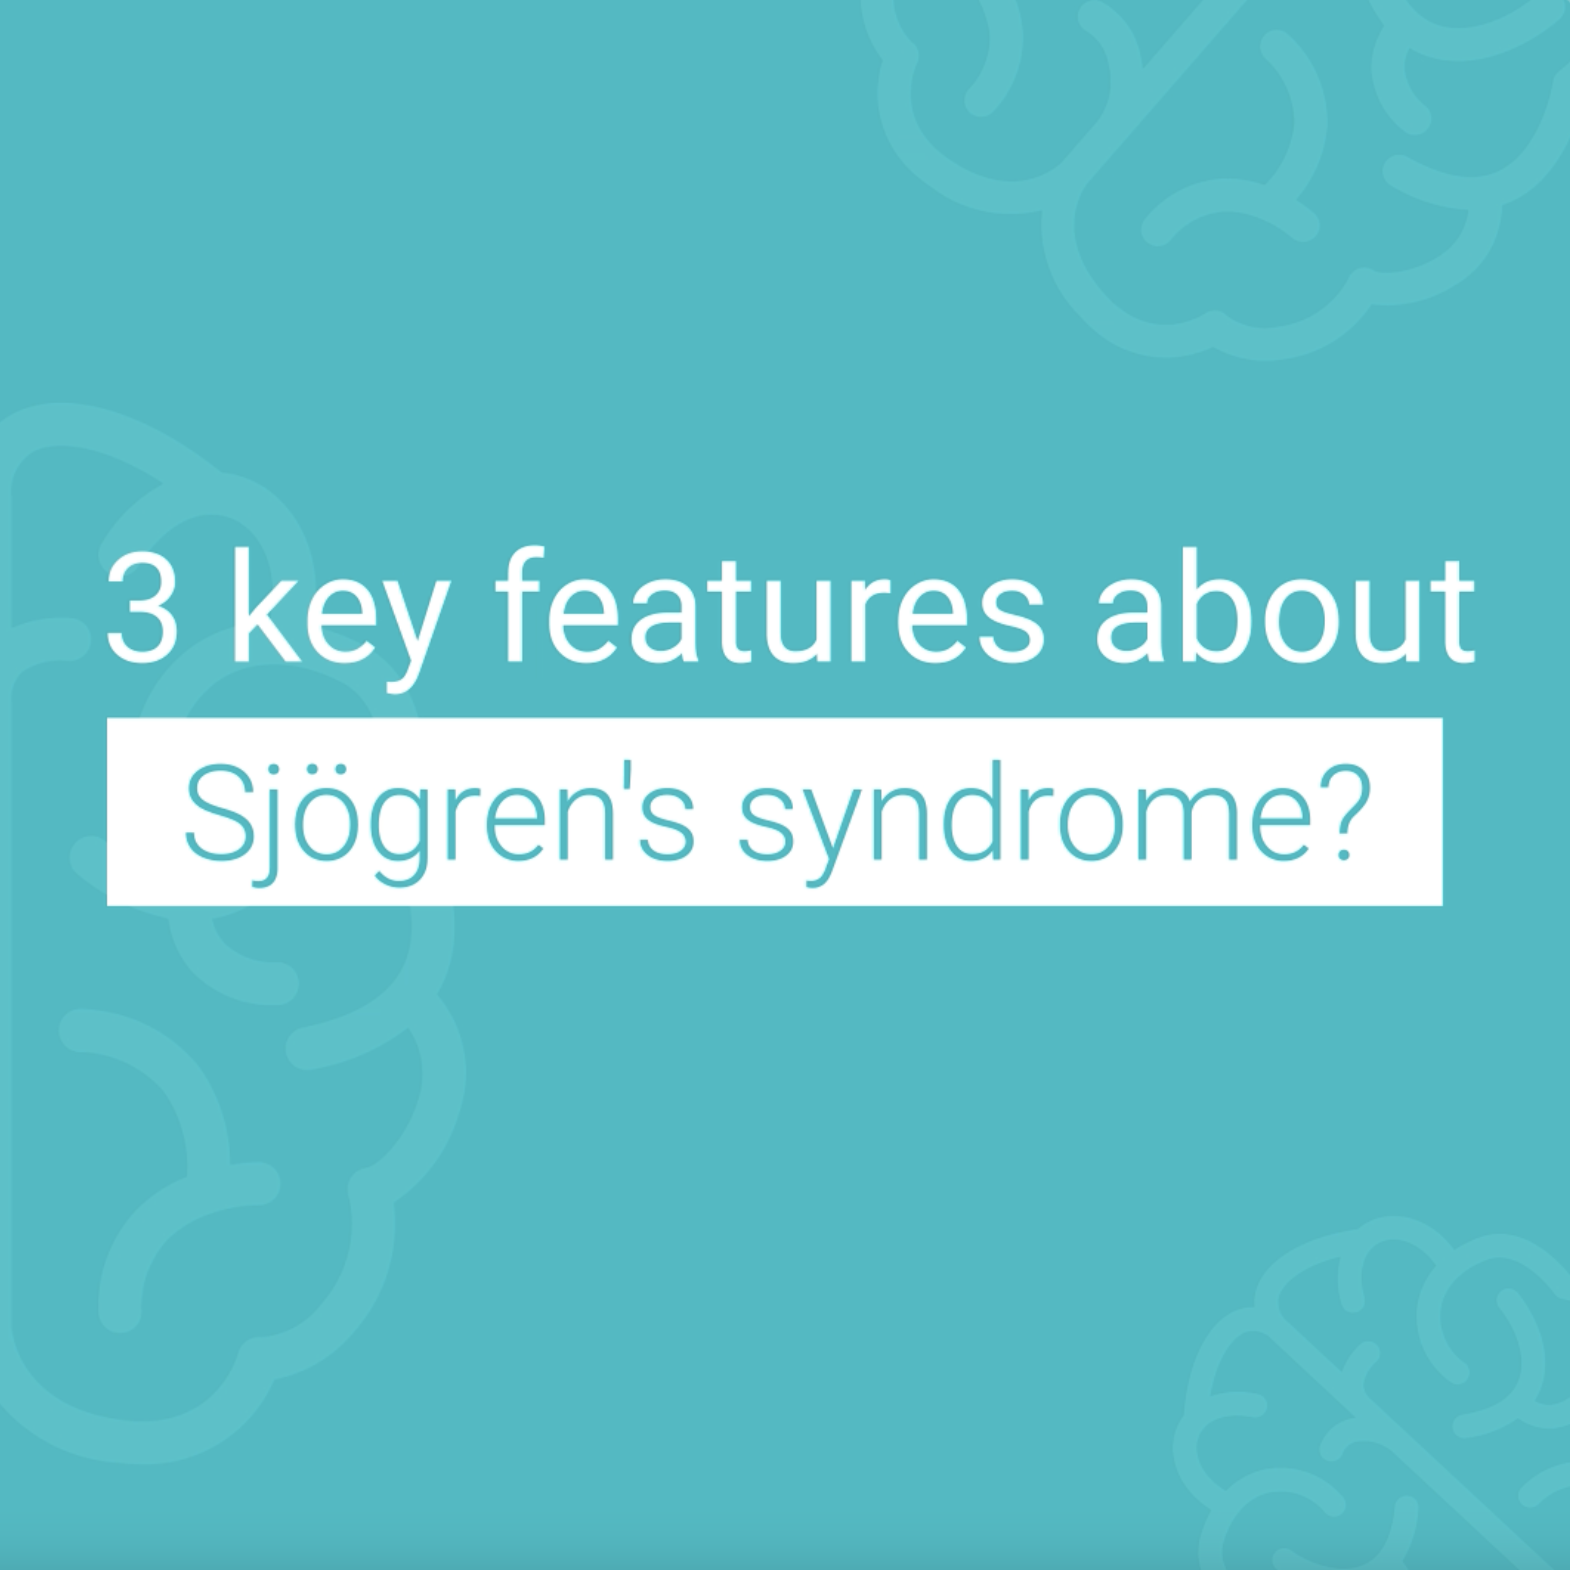 Couverture vidéo de sensibilisation du syndrome de Sjögren